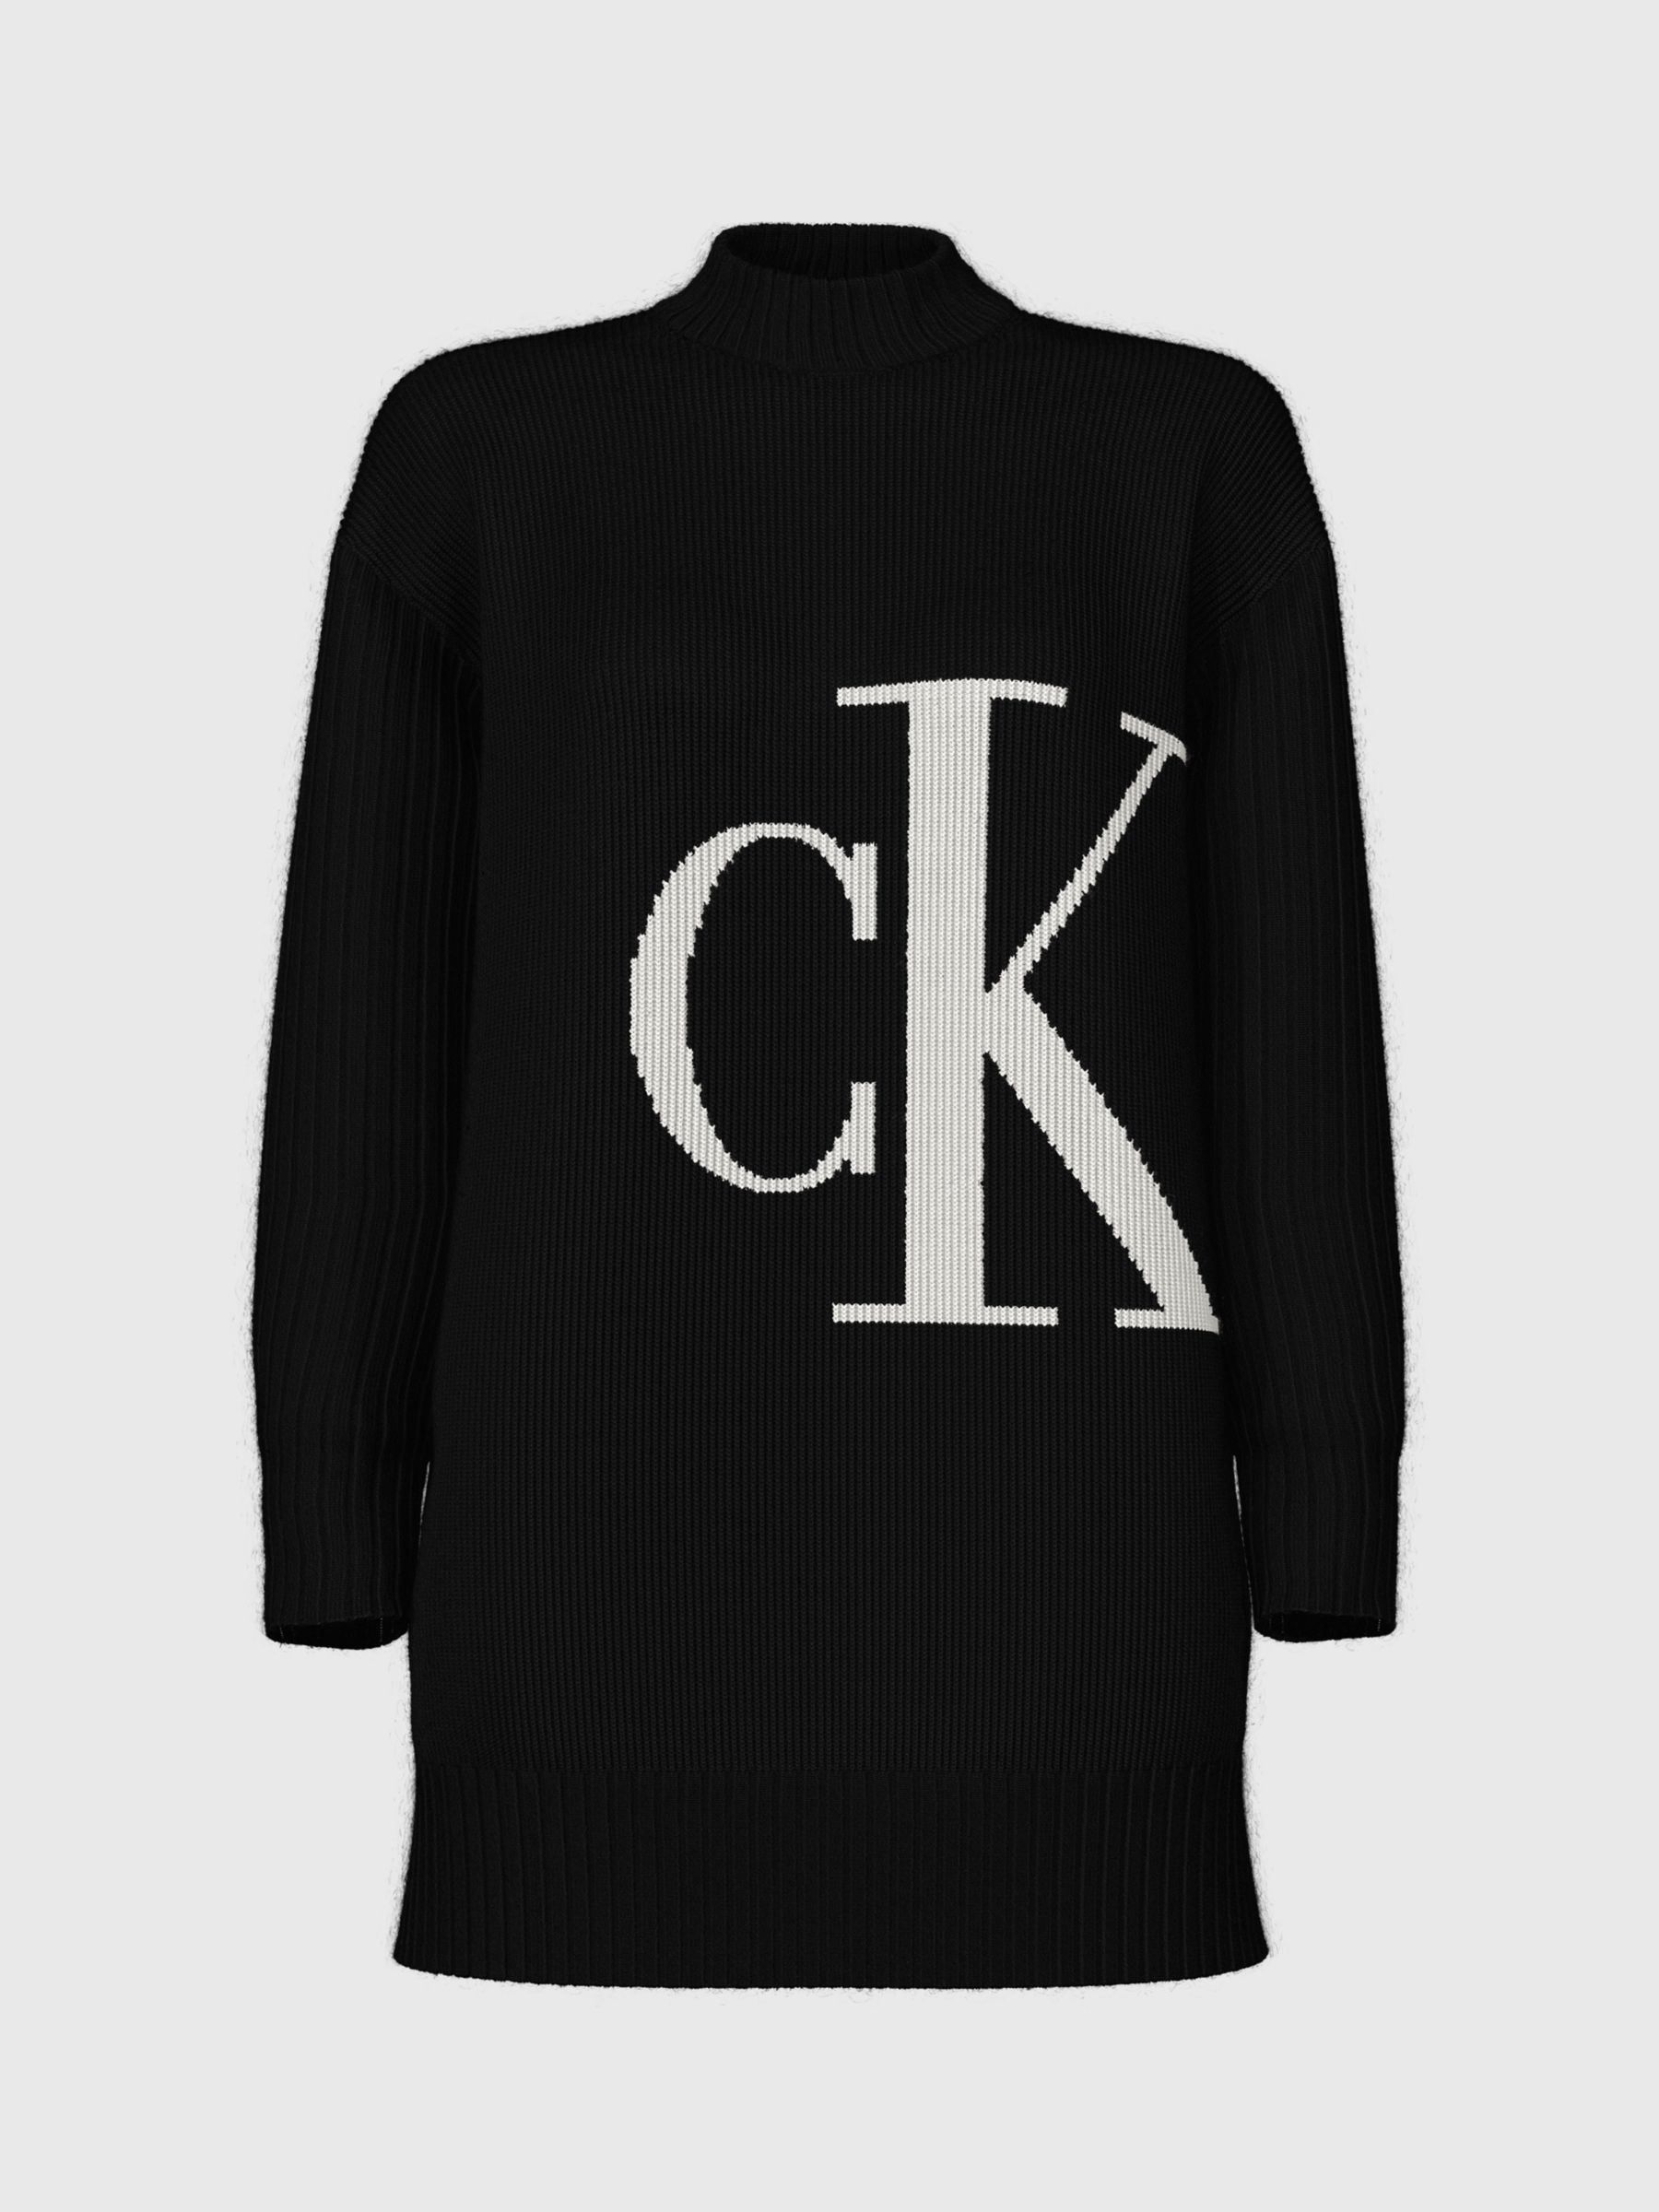 Calvin Klein Blown Up Logo Jumper, Black/White, L